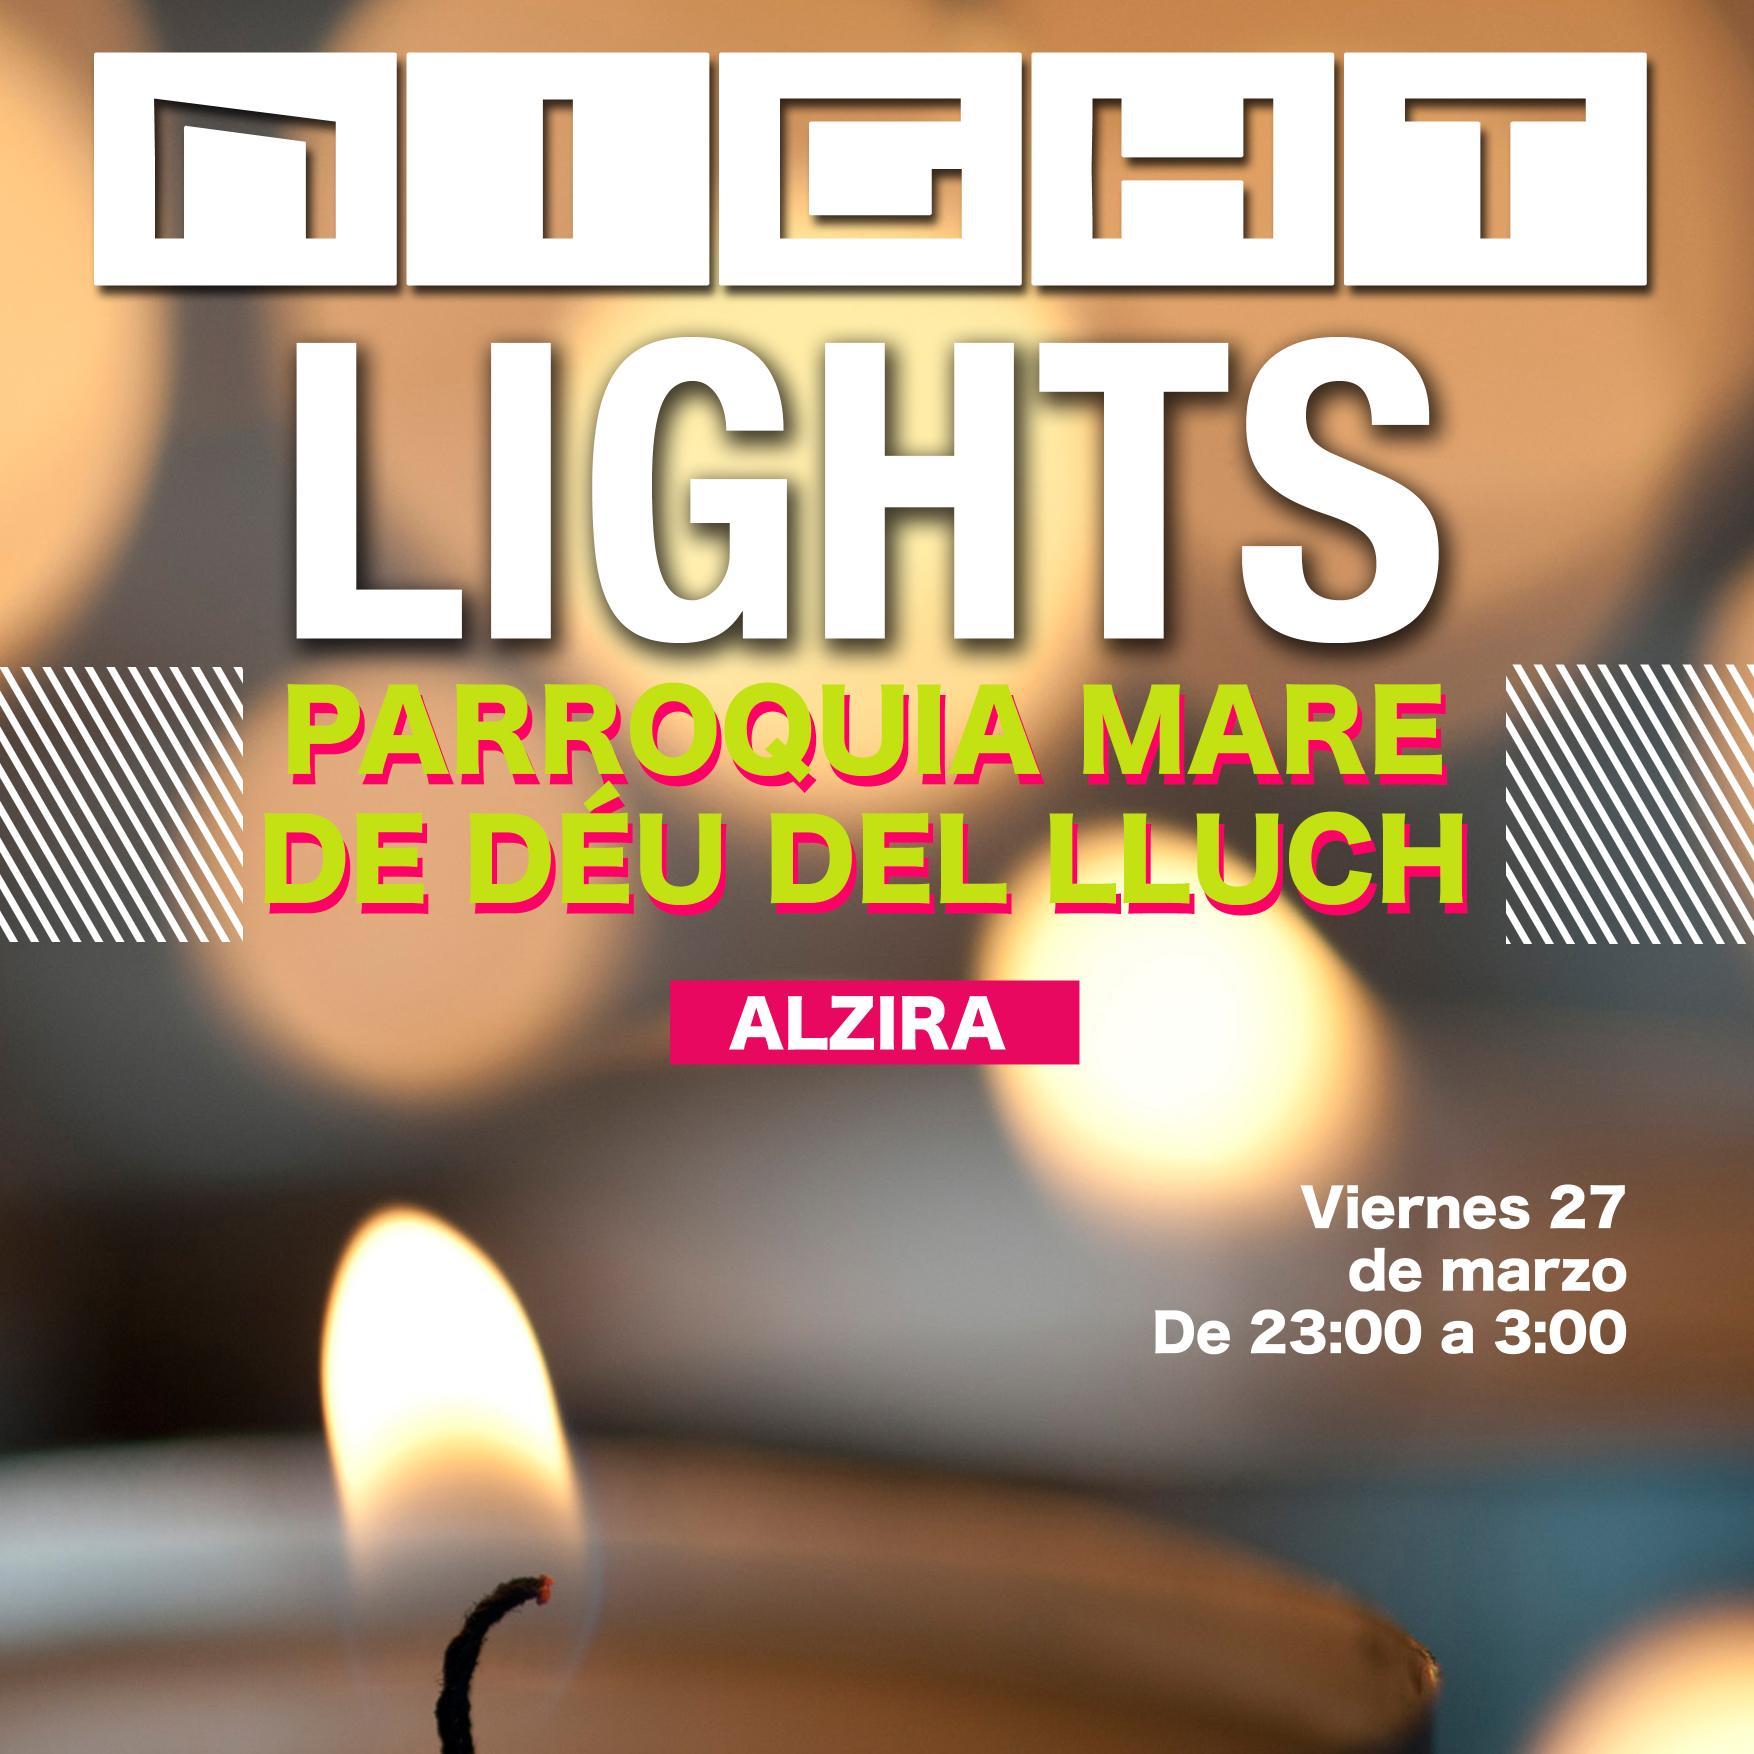 Night Lights es una experiencia nueva para jóvenes valientes, gratuita y abierta a todo el mundo. ¿Quieres ayudarnos a iluminar Alzira este viernes? Síguenos!